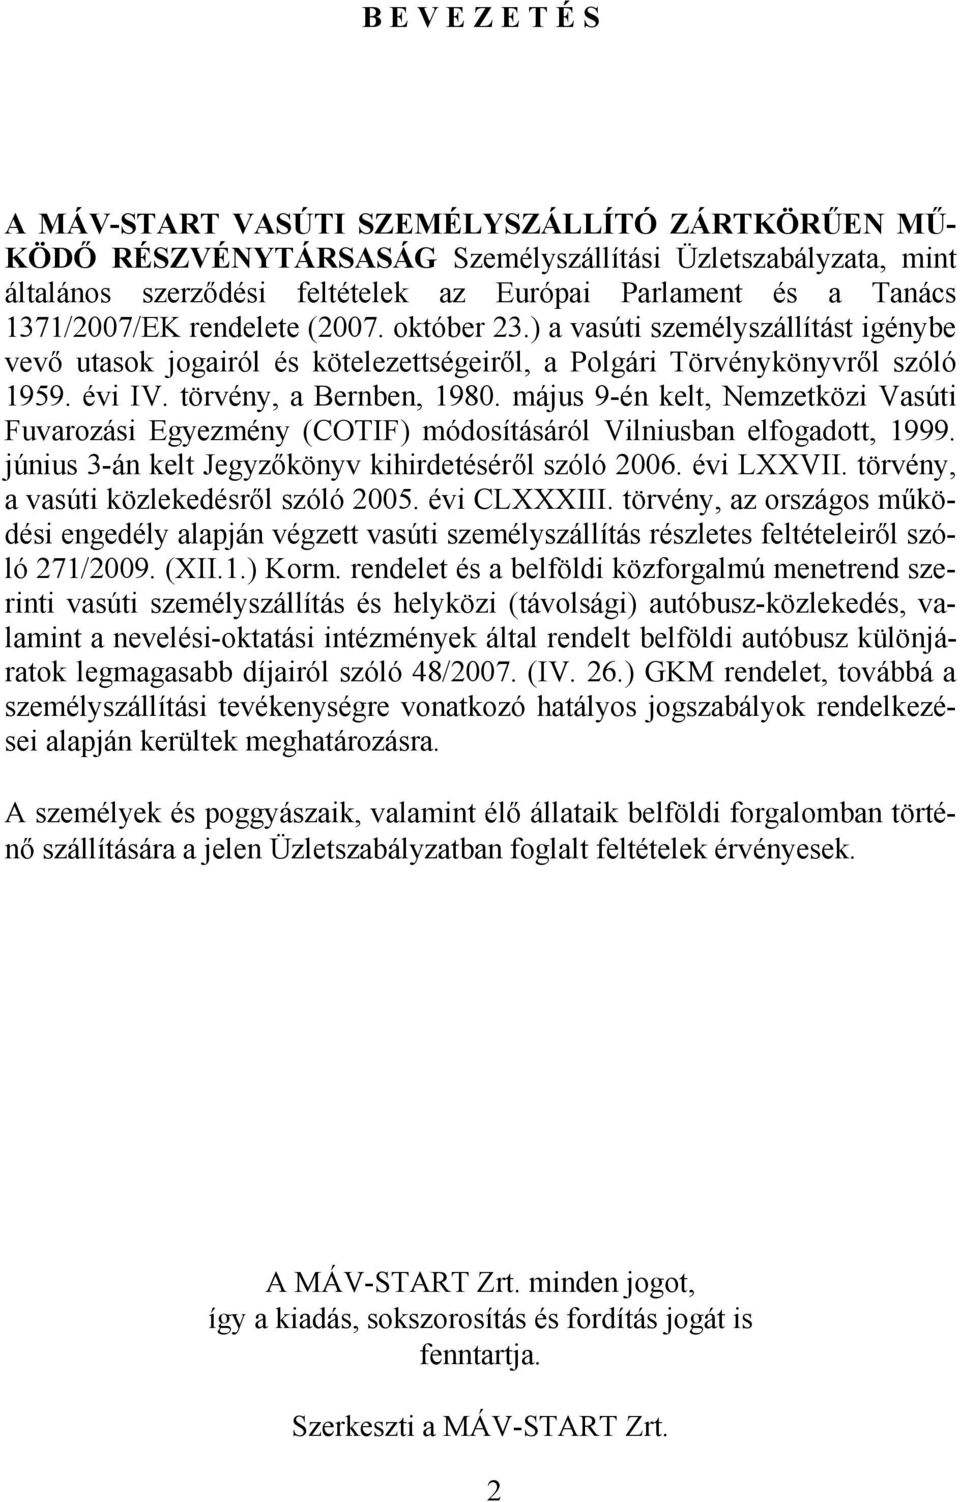 május 9-én kelt, Nemzetközi Vasúti Fuvarozási Egyezmény (COTIF) módosításáról Vilniusban elfogadott, 1999. június 3-án kelt Jegyzőkönyv kihirdetéséről szóló 2006. évi LXXVII.